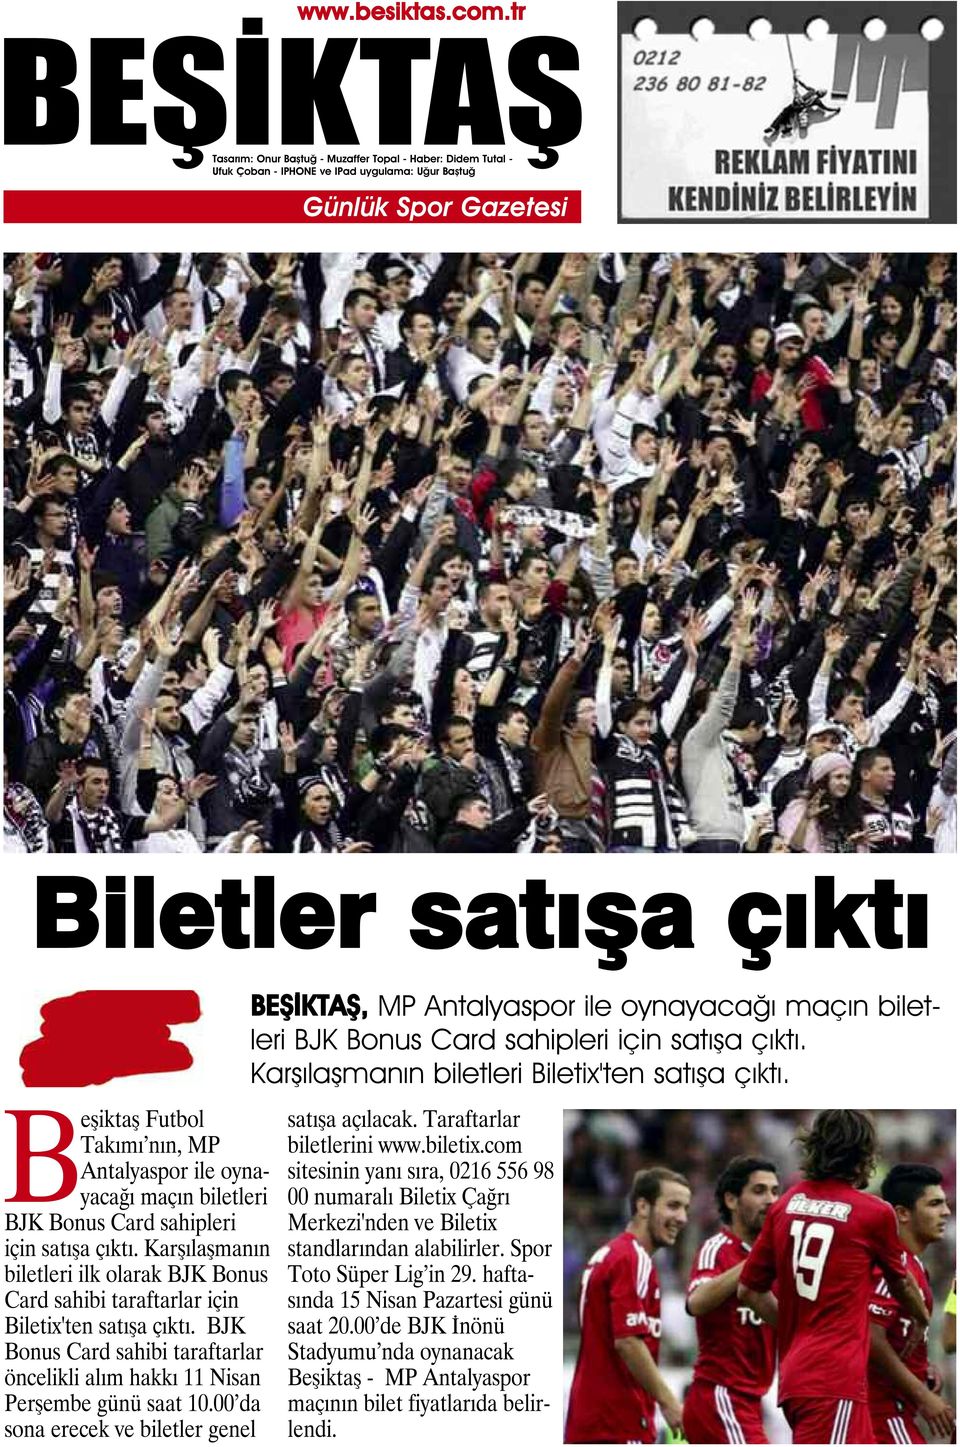 00 da sona erecek ve biletler genel, MP Antalyaspor ile oynayacağı maçın biletleri BJK Bonus Card sahipleri için satışa çıktı. Karşılaşmanın biletleri Biletix'ten satışa çıktı. satışa açılacak.